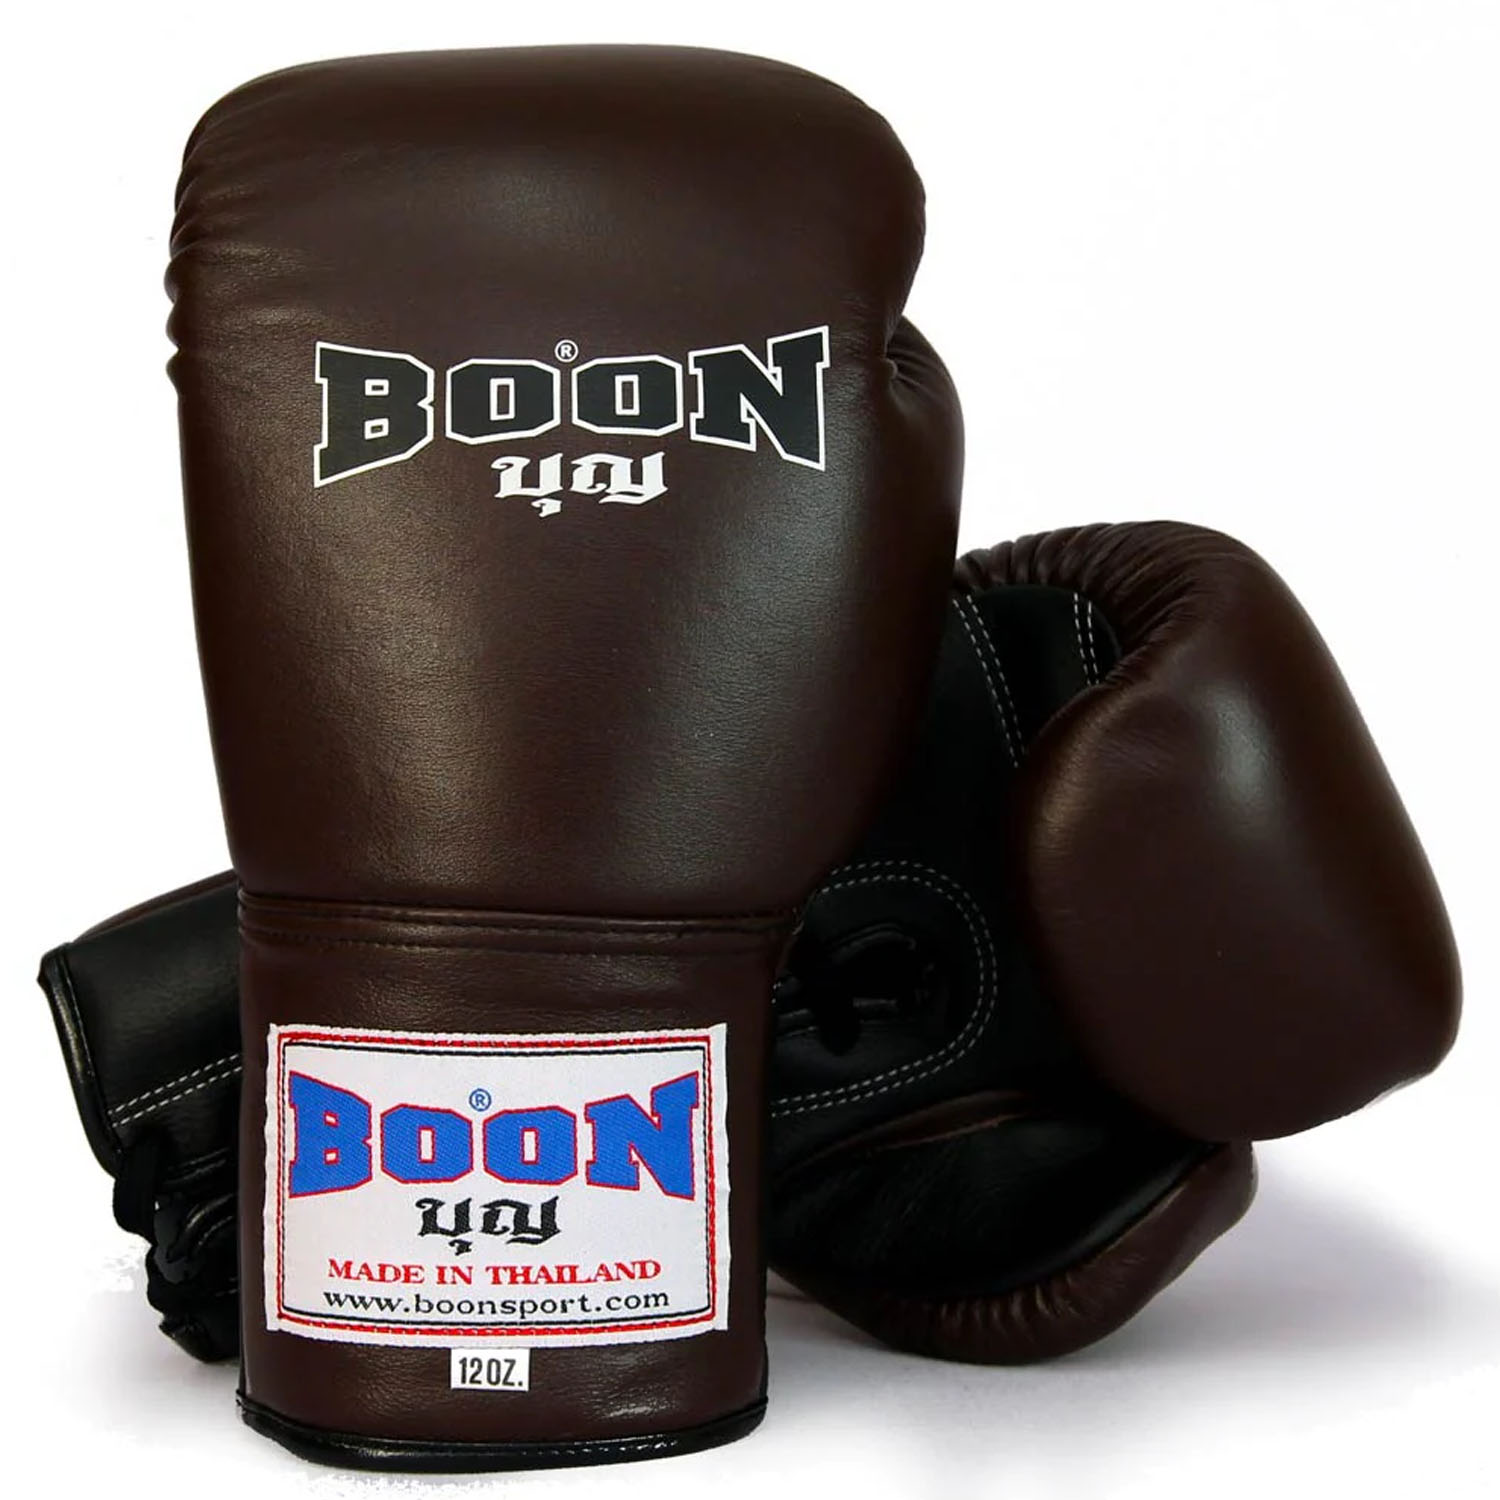 BOON Boxhandschuhe, BGLBR, Lace Up, braun-schwarz